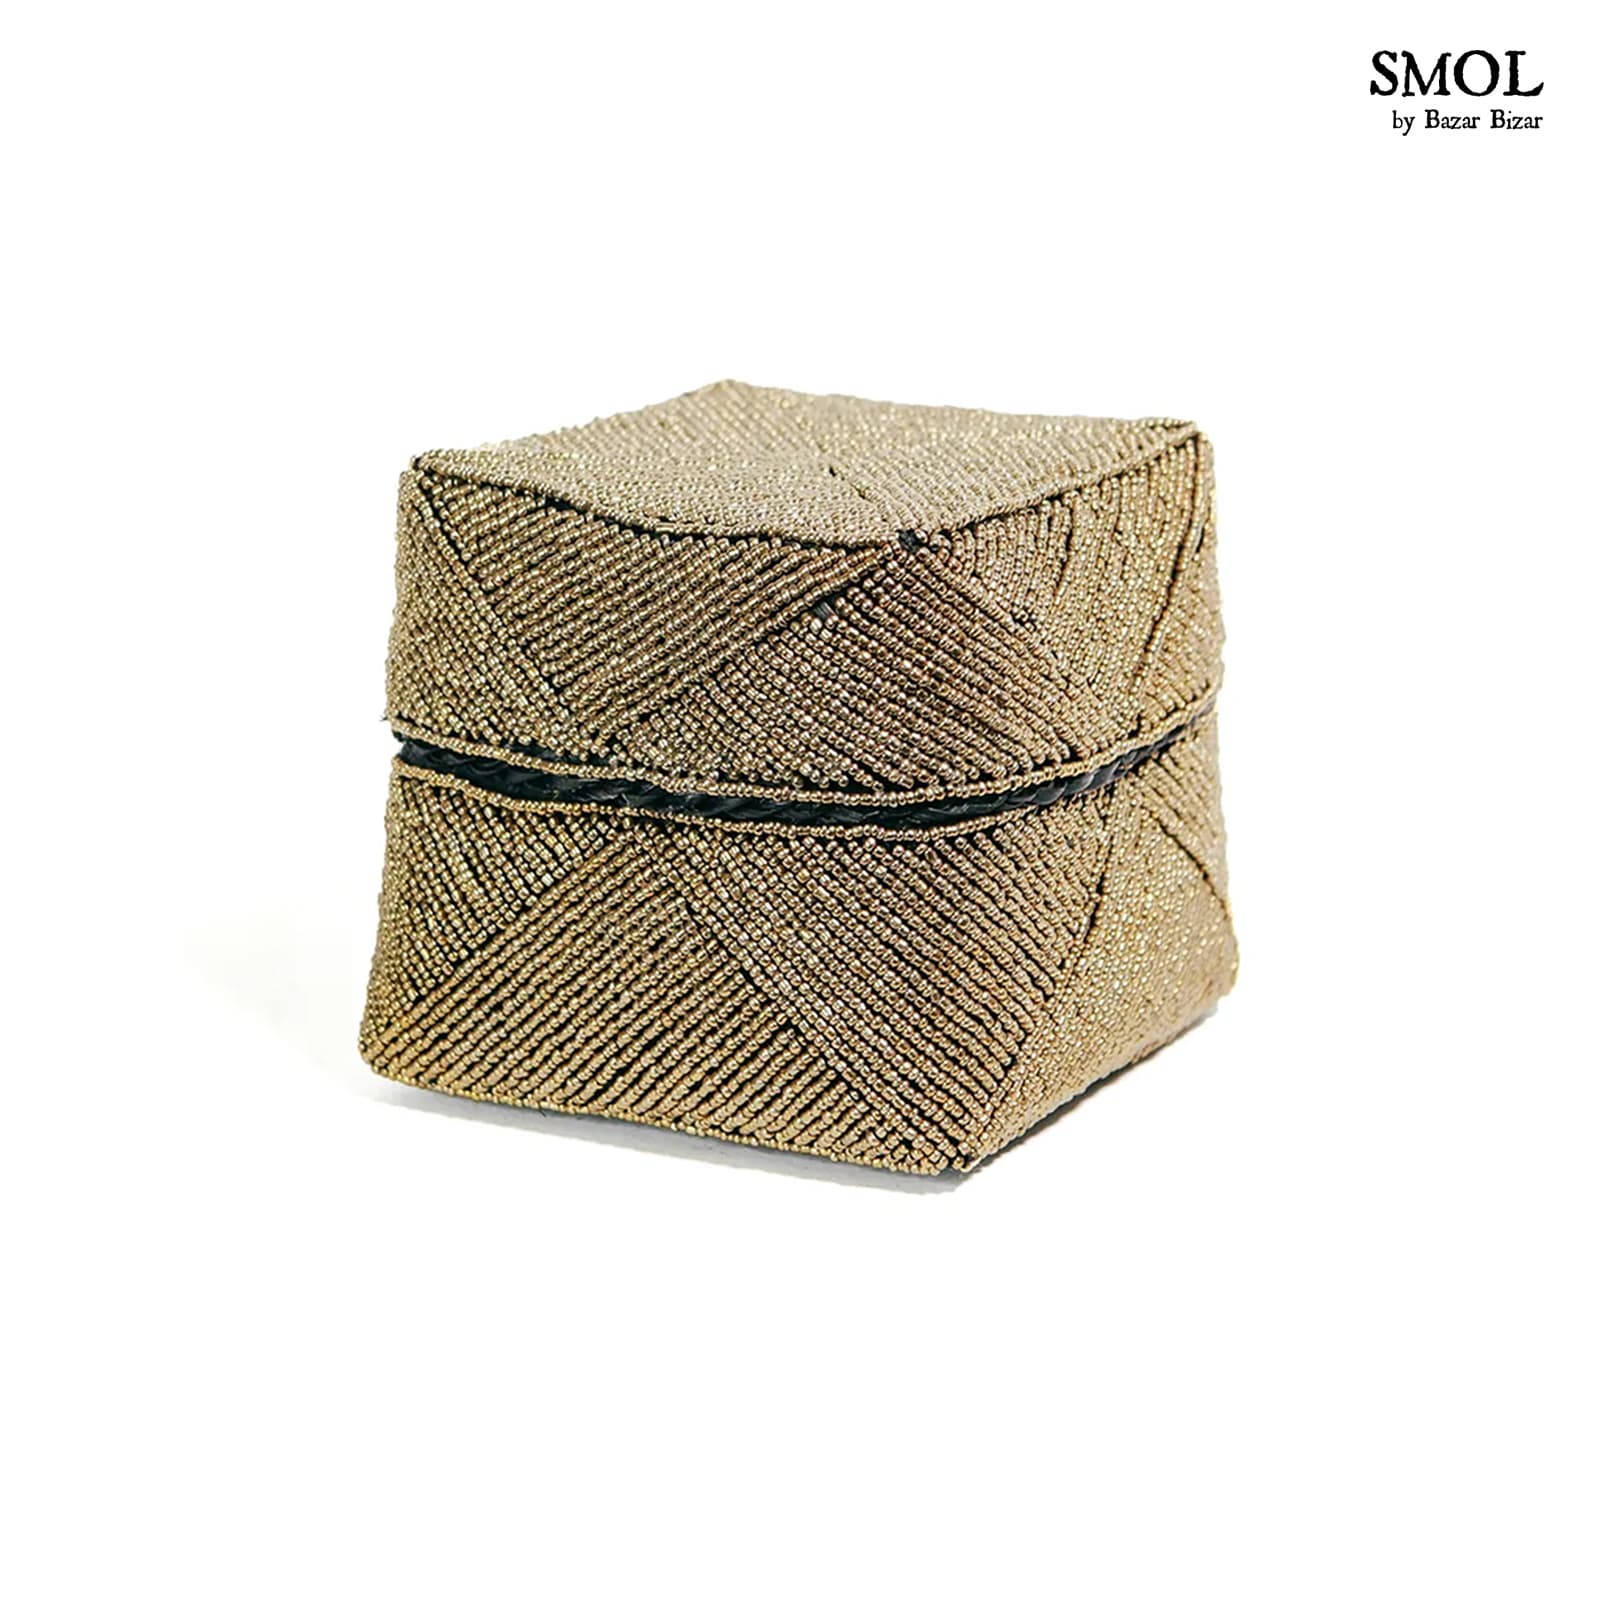 smol.hu -GOODE, 3 db-os, arany gyöngyös, bambuszkosár szett, 15 cm középső méretű kosár